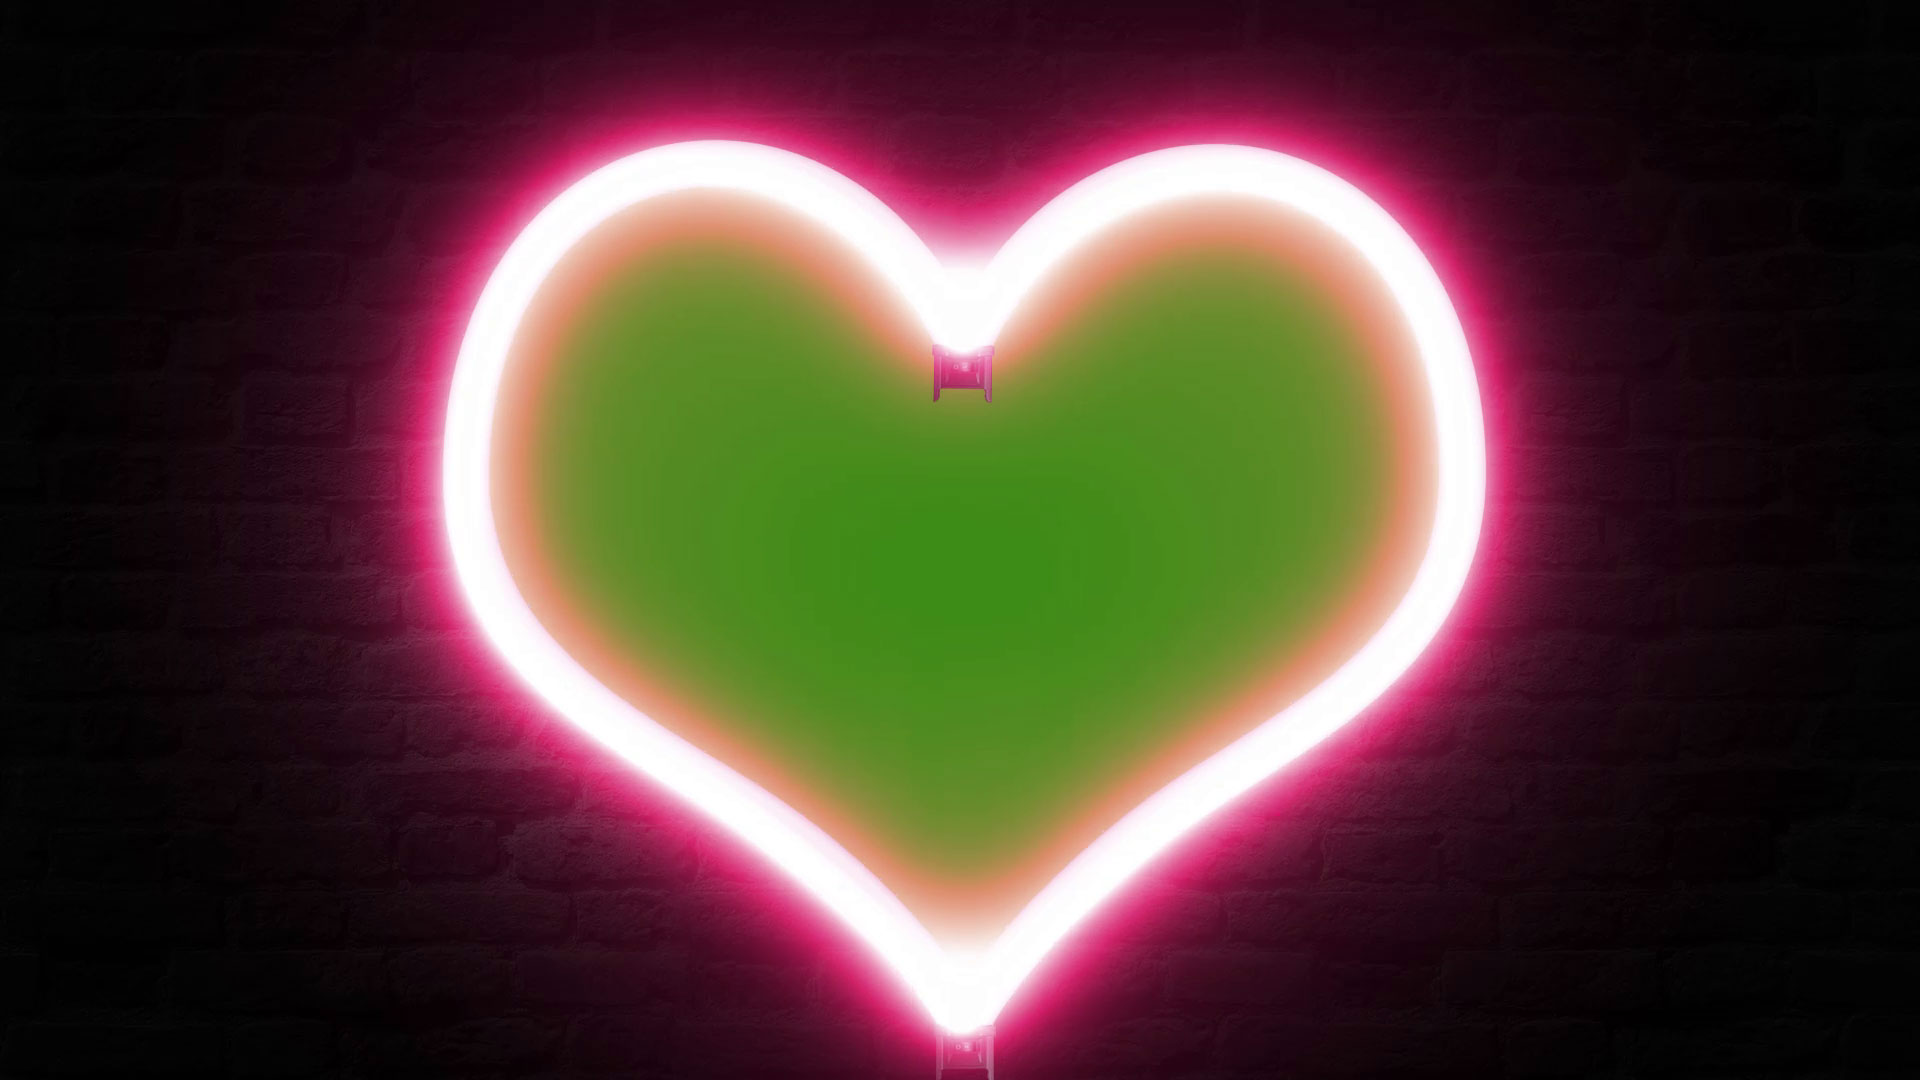 Neon Heart Break Blinking Green Screen Stock Footage Video (100%  Royalty-free) 1105016095